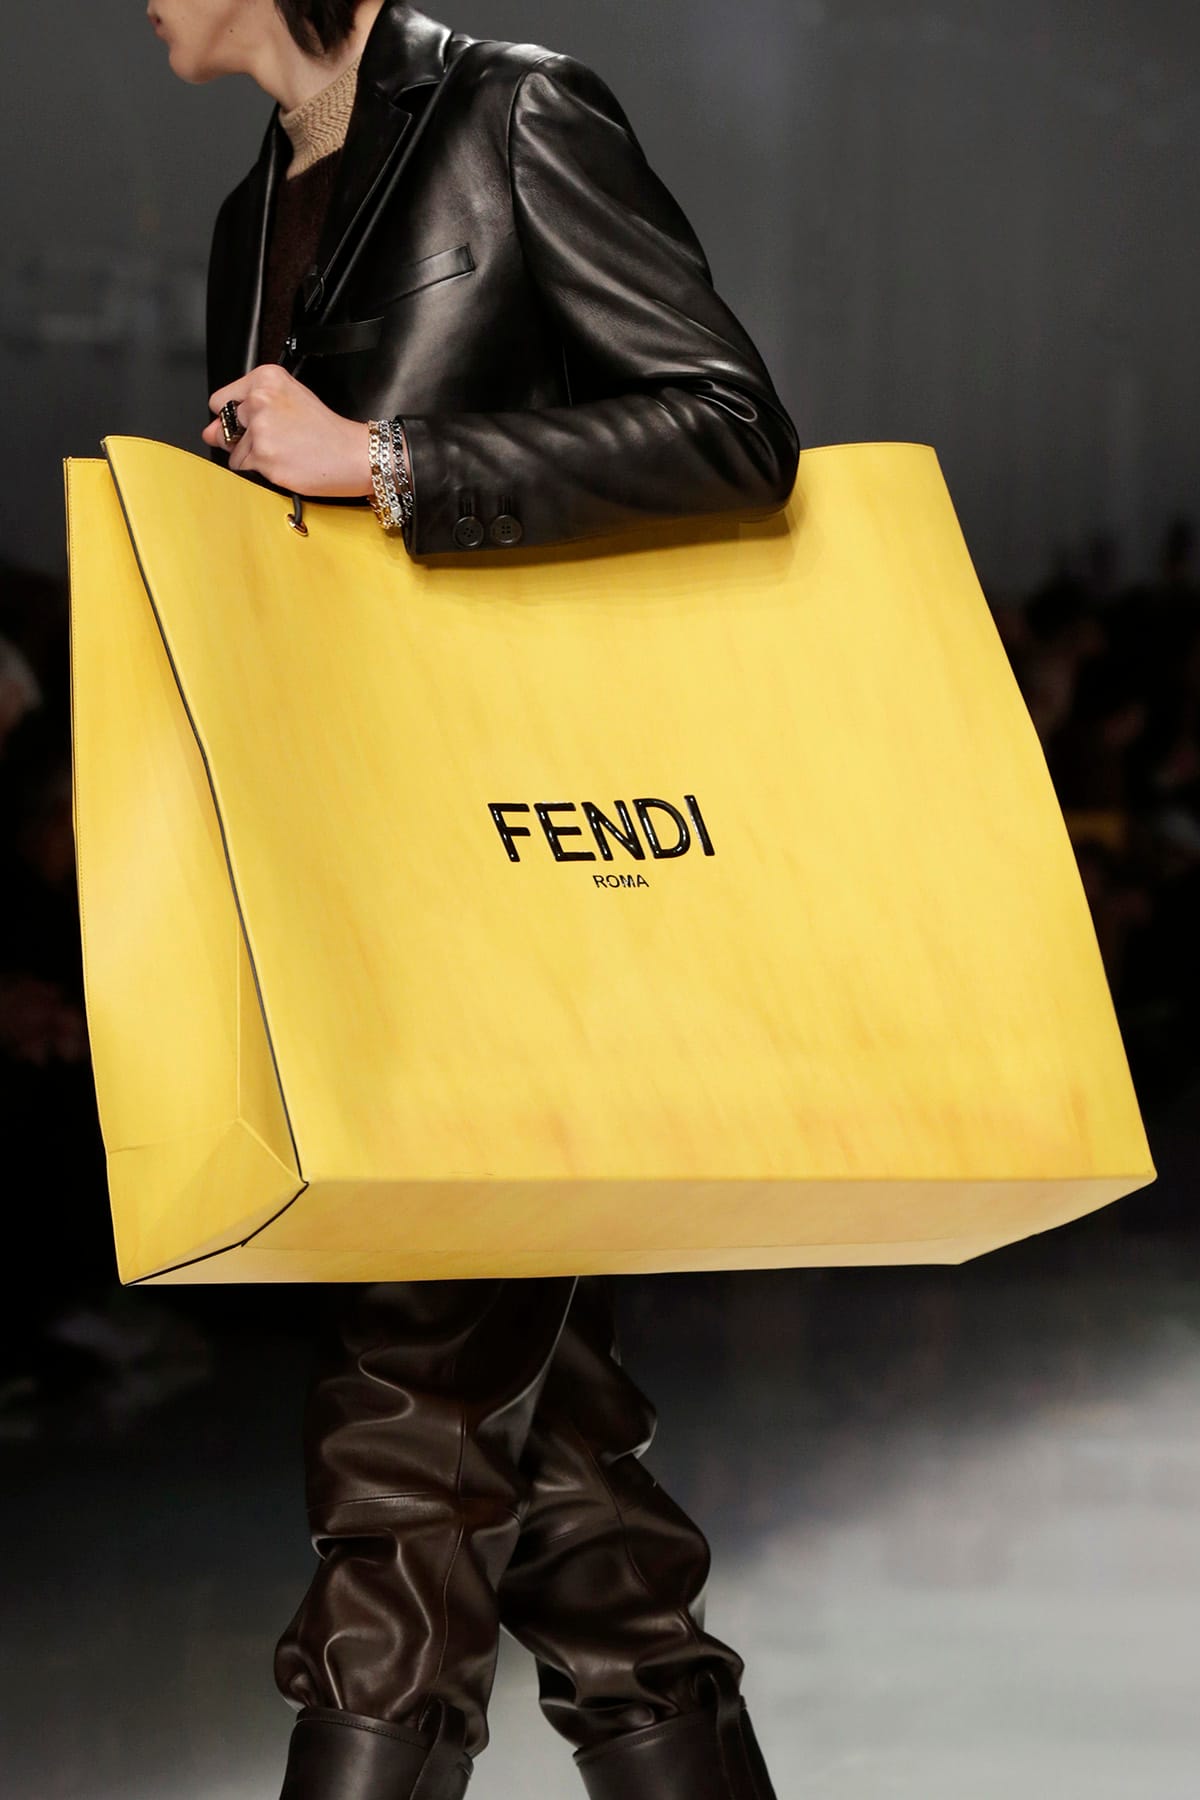 fendi yellow purse